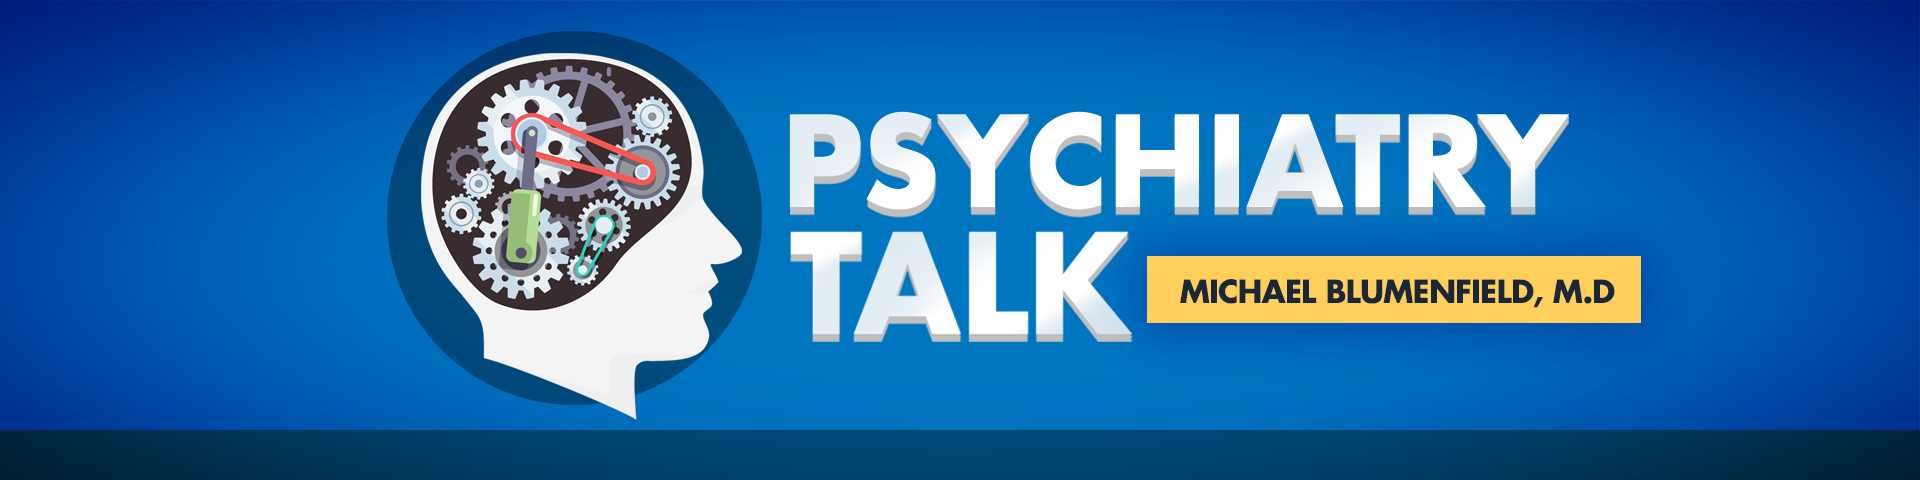 PsychiatryTalk header image 1